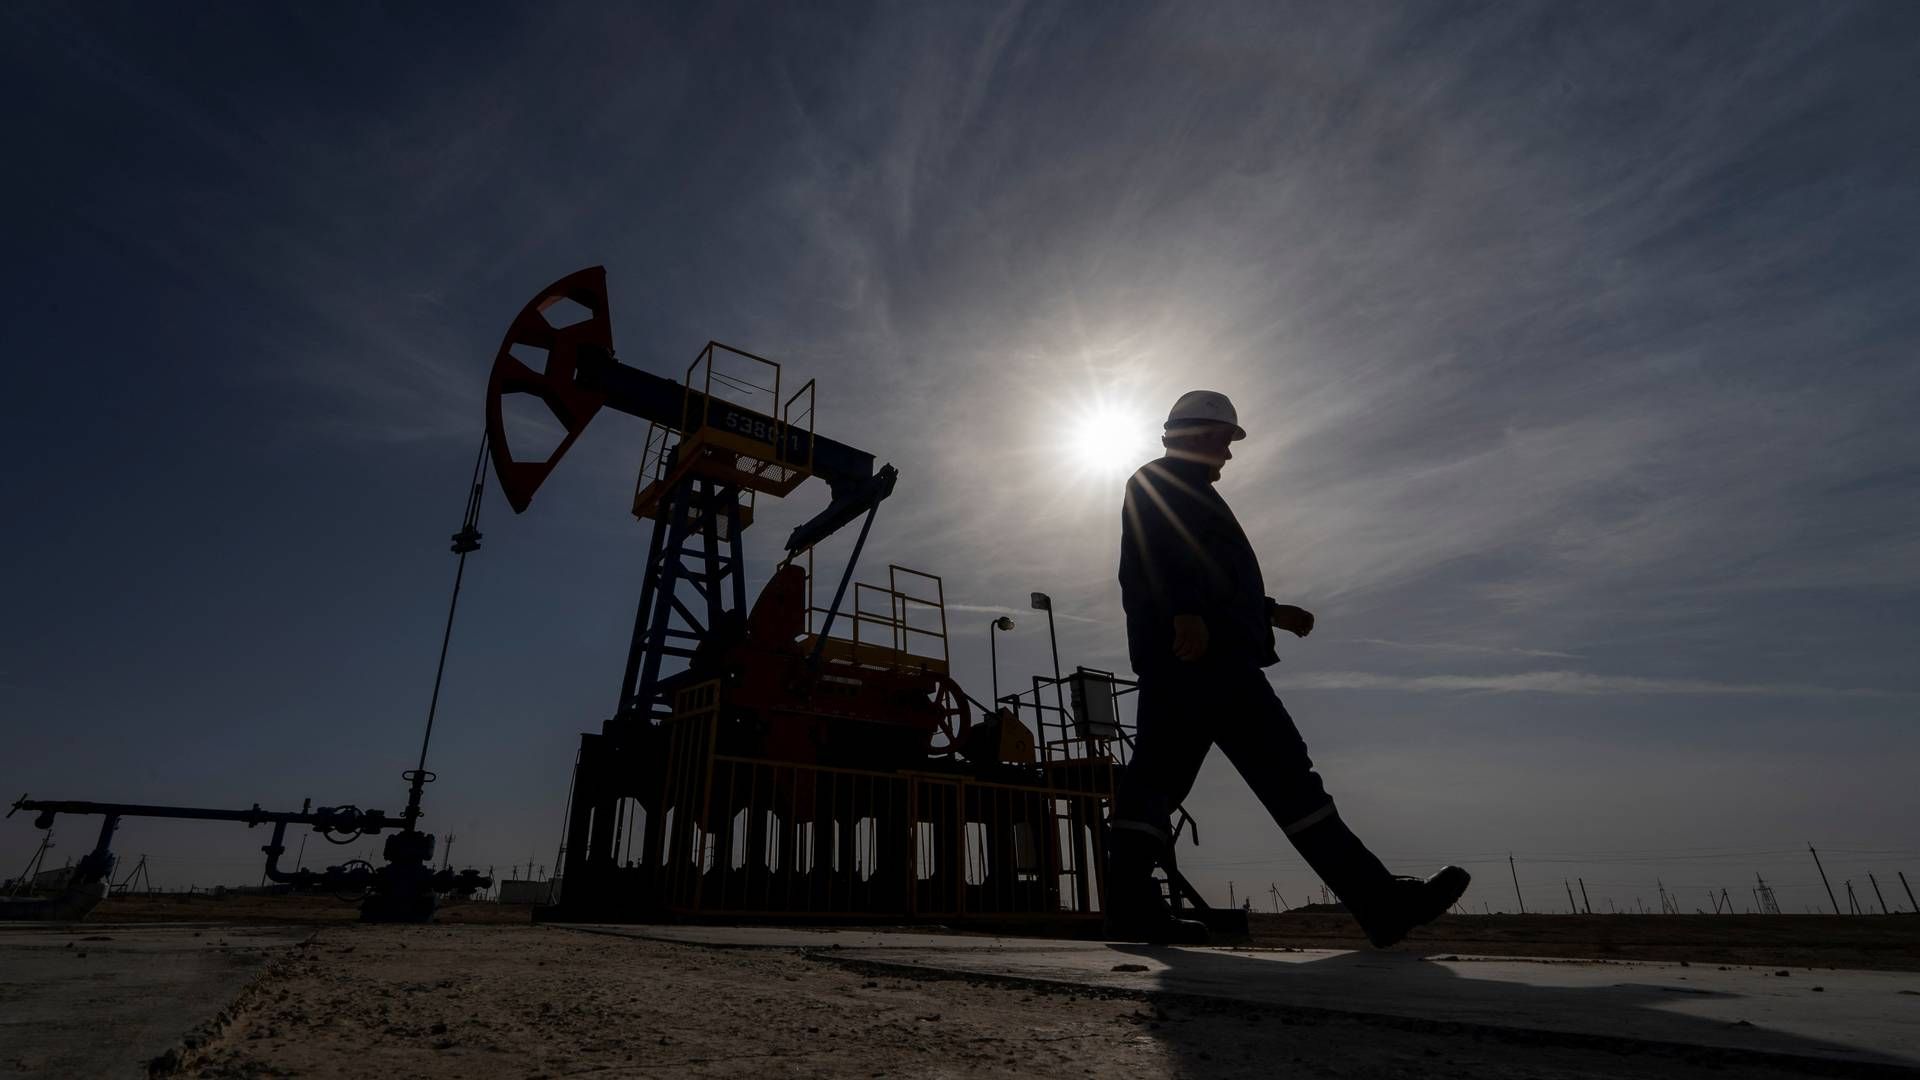 Ved et møde i juni enedes Opec+ om at begrænse olieproduktionen ind i 2024, og Saudi-Arabien annoncerede i juli på egne vegne en nedskæring på 1 mio. tønder om dagen, som foreløbigt gælder til og med 2023. | Foto: Turar Kazangapov